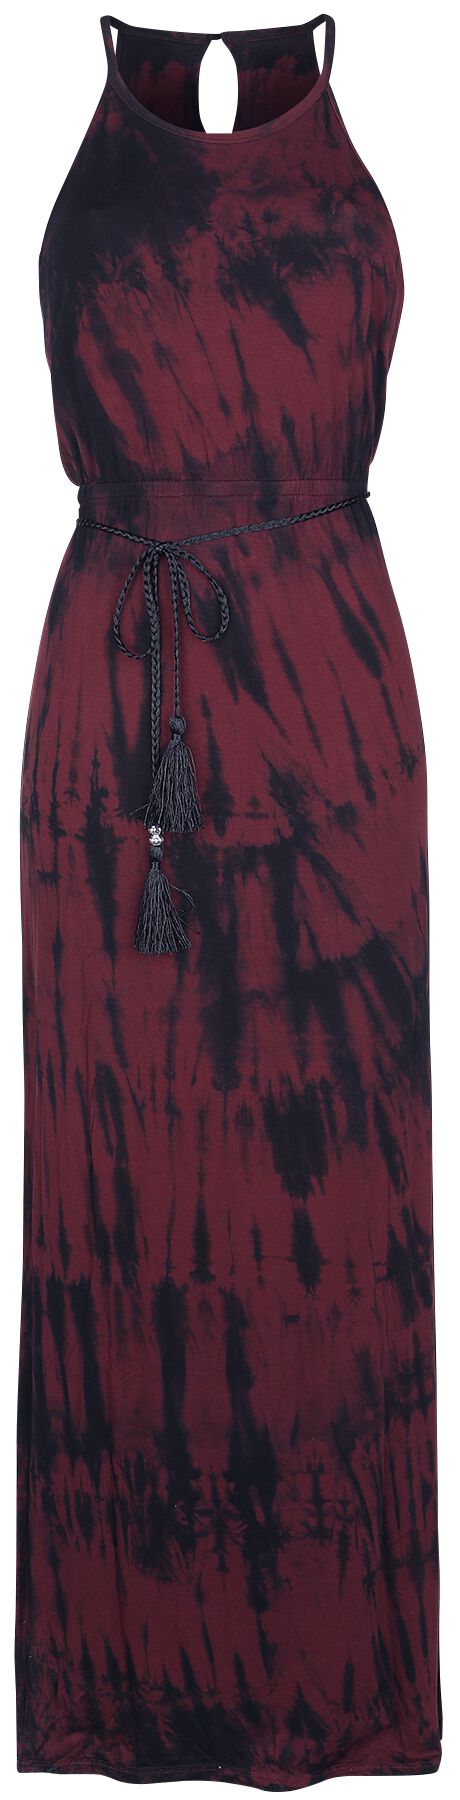 Image of Abito lungo di RED by EMP - Batik Maxi Dress - S a 5XL - Donna - rosso/nero